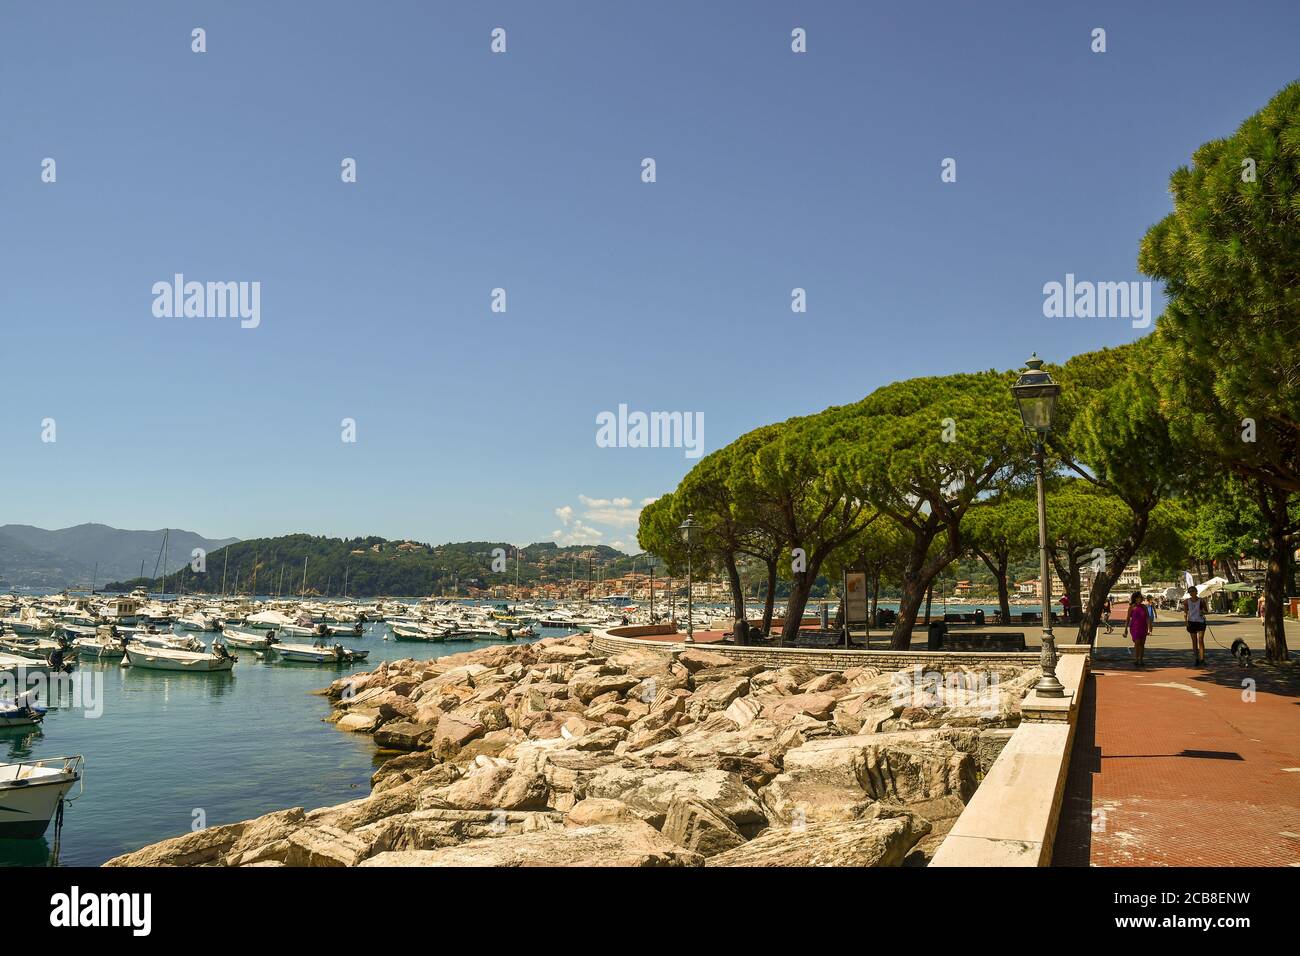 Vista sul lungomare con la gente a piedi e il porto della città sul mare sulla riva del Golfo dei Poeti, Lerici, la Spezia, Italia Foto Stock